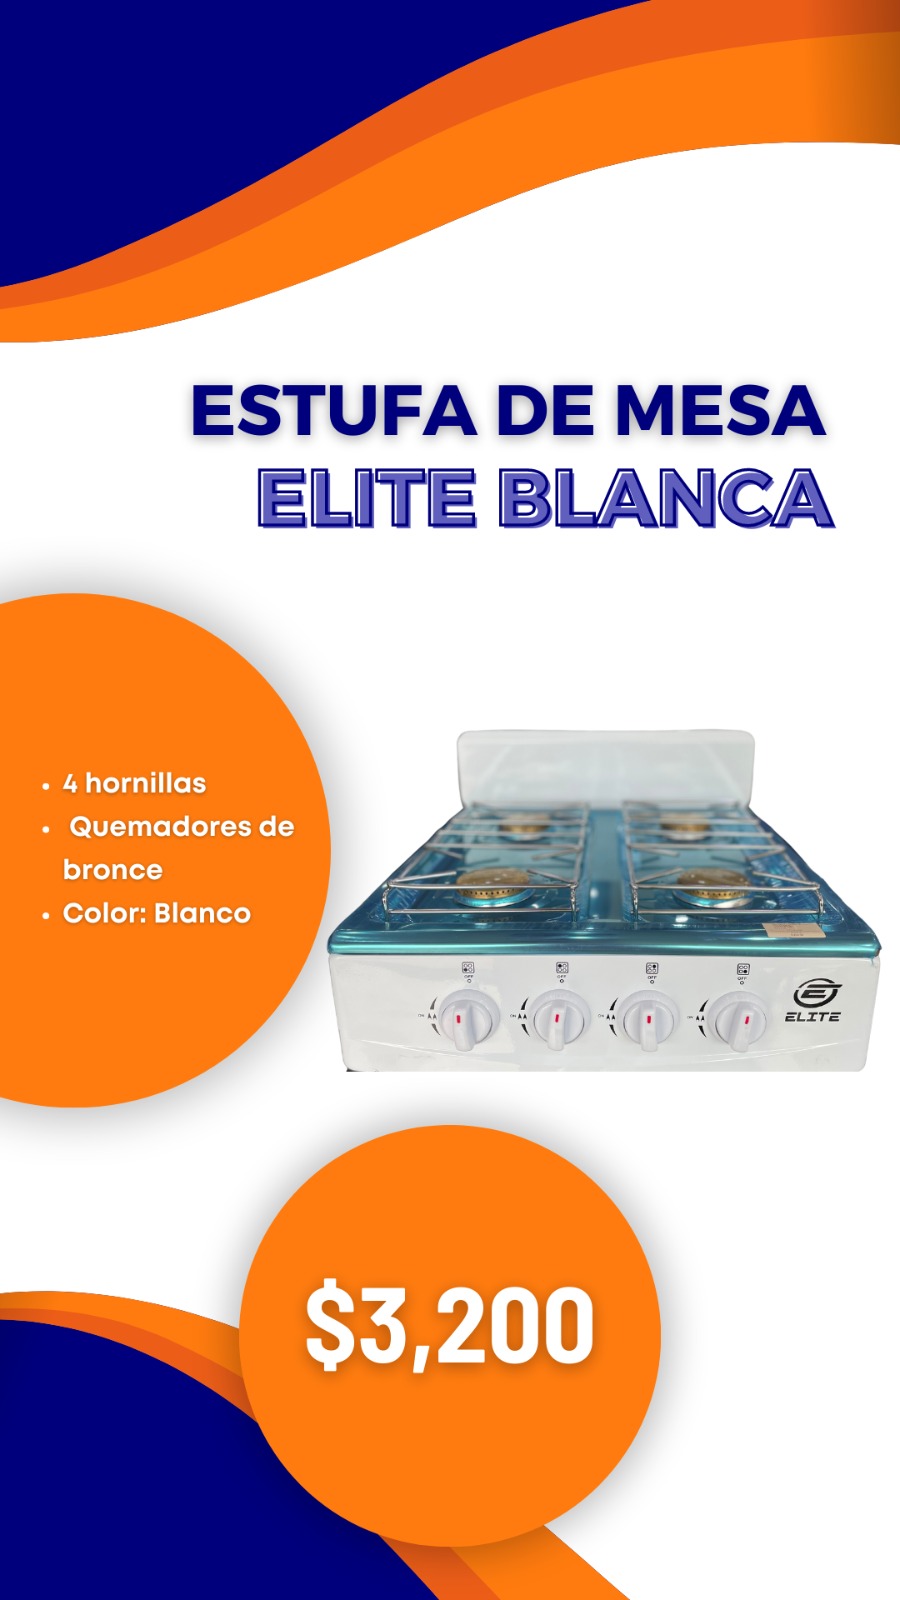 Estufa de Mesa Elite Blanca Foto 7185657-1.jpg